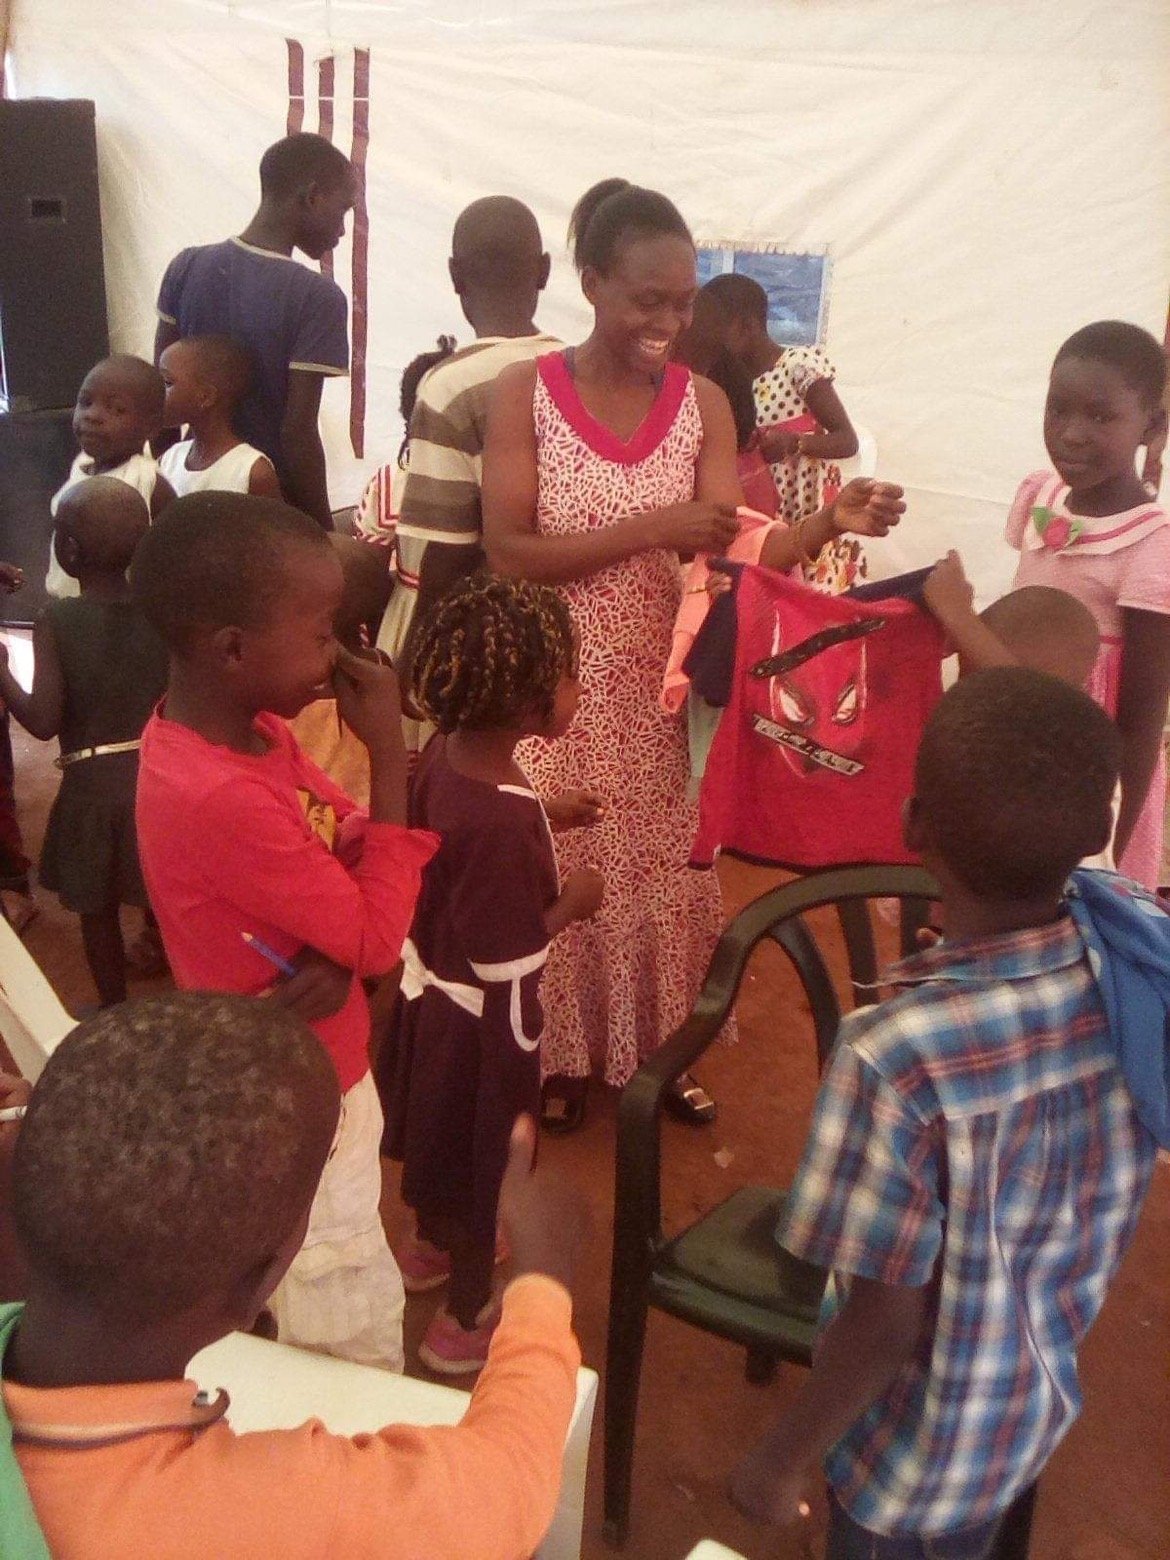 Volunteer work in Uganda